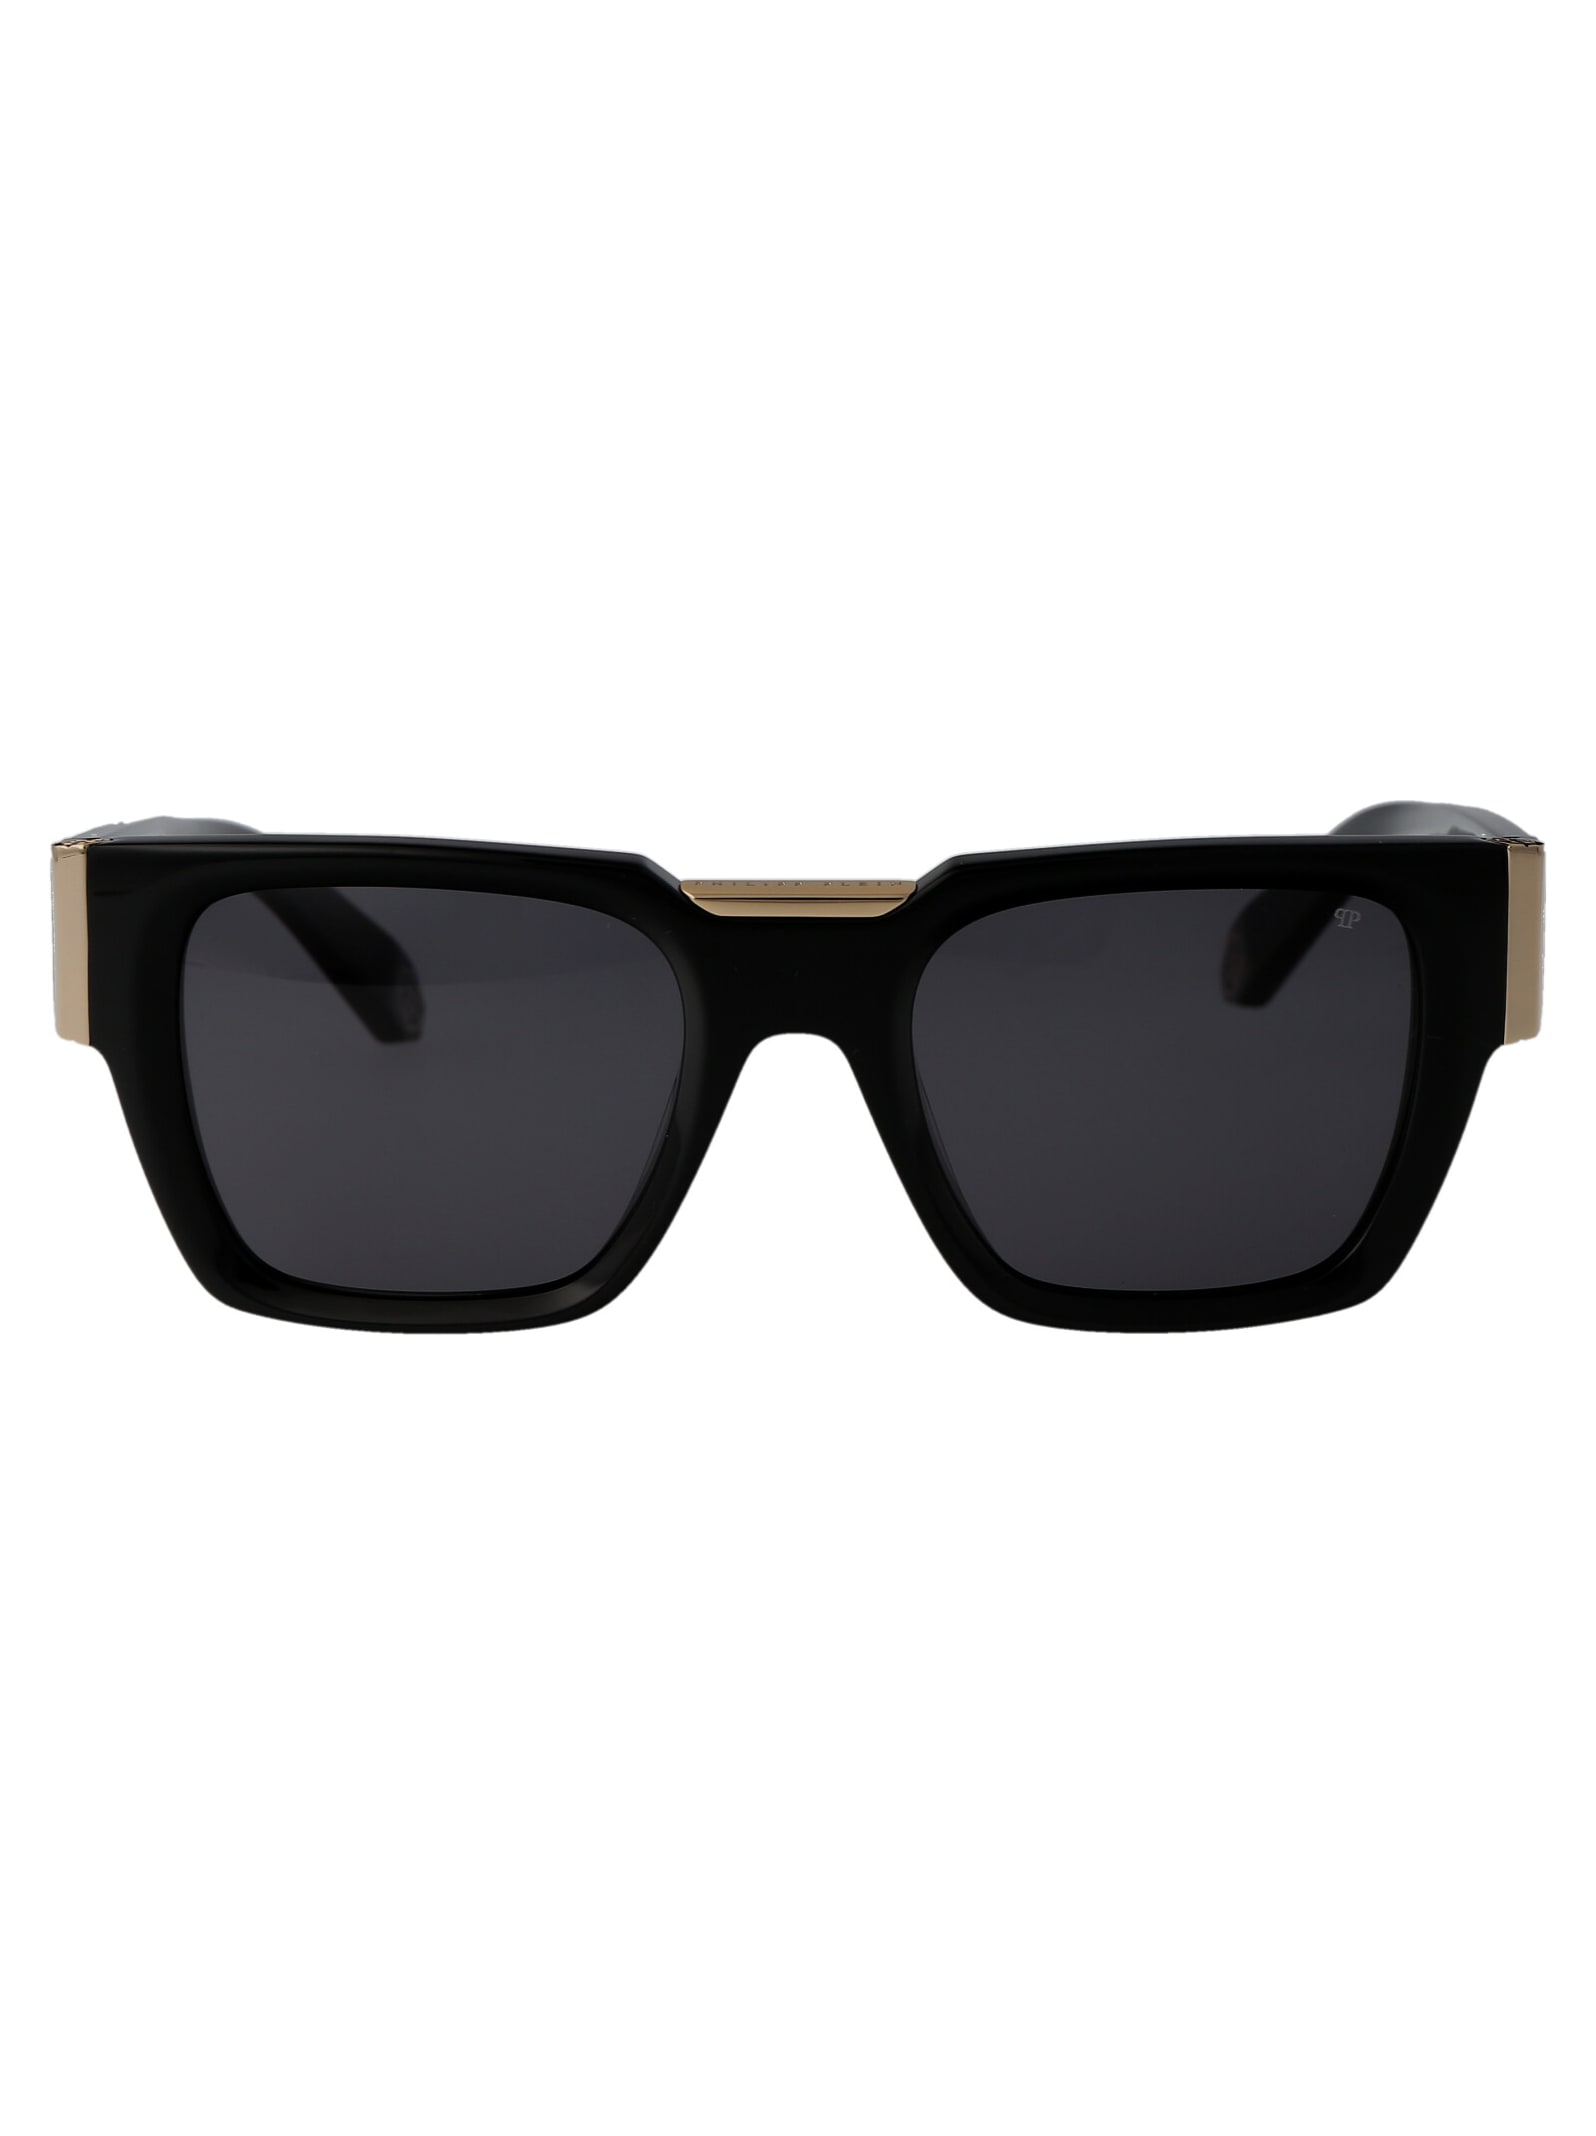 Philipp Plein Spp095m Sunglasses